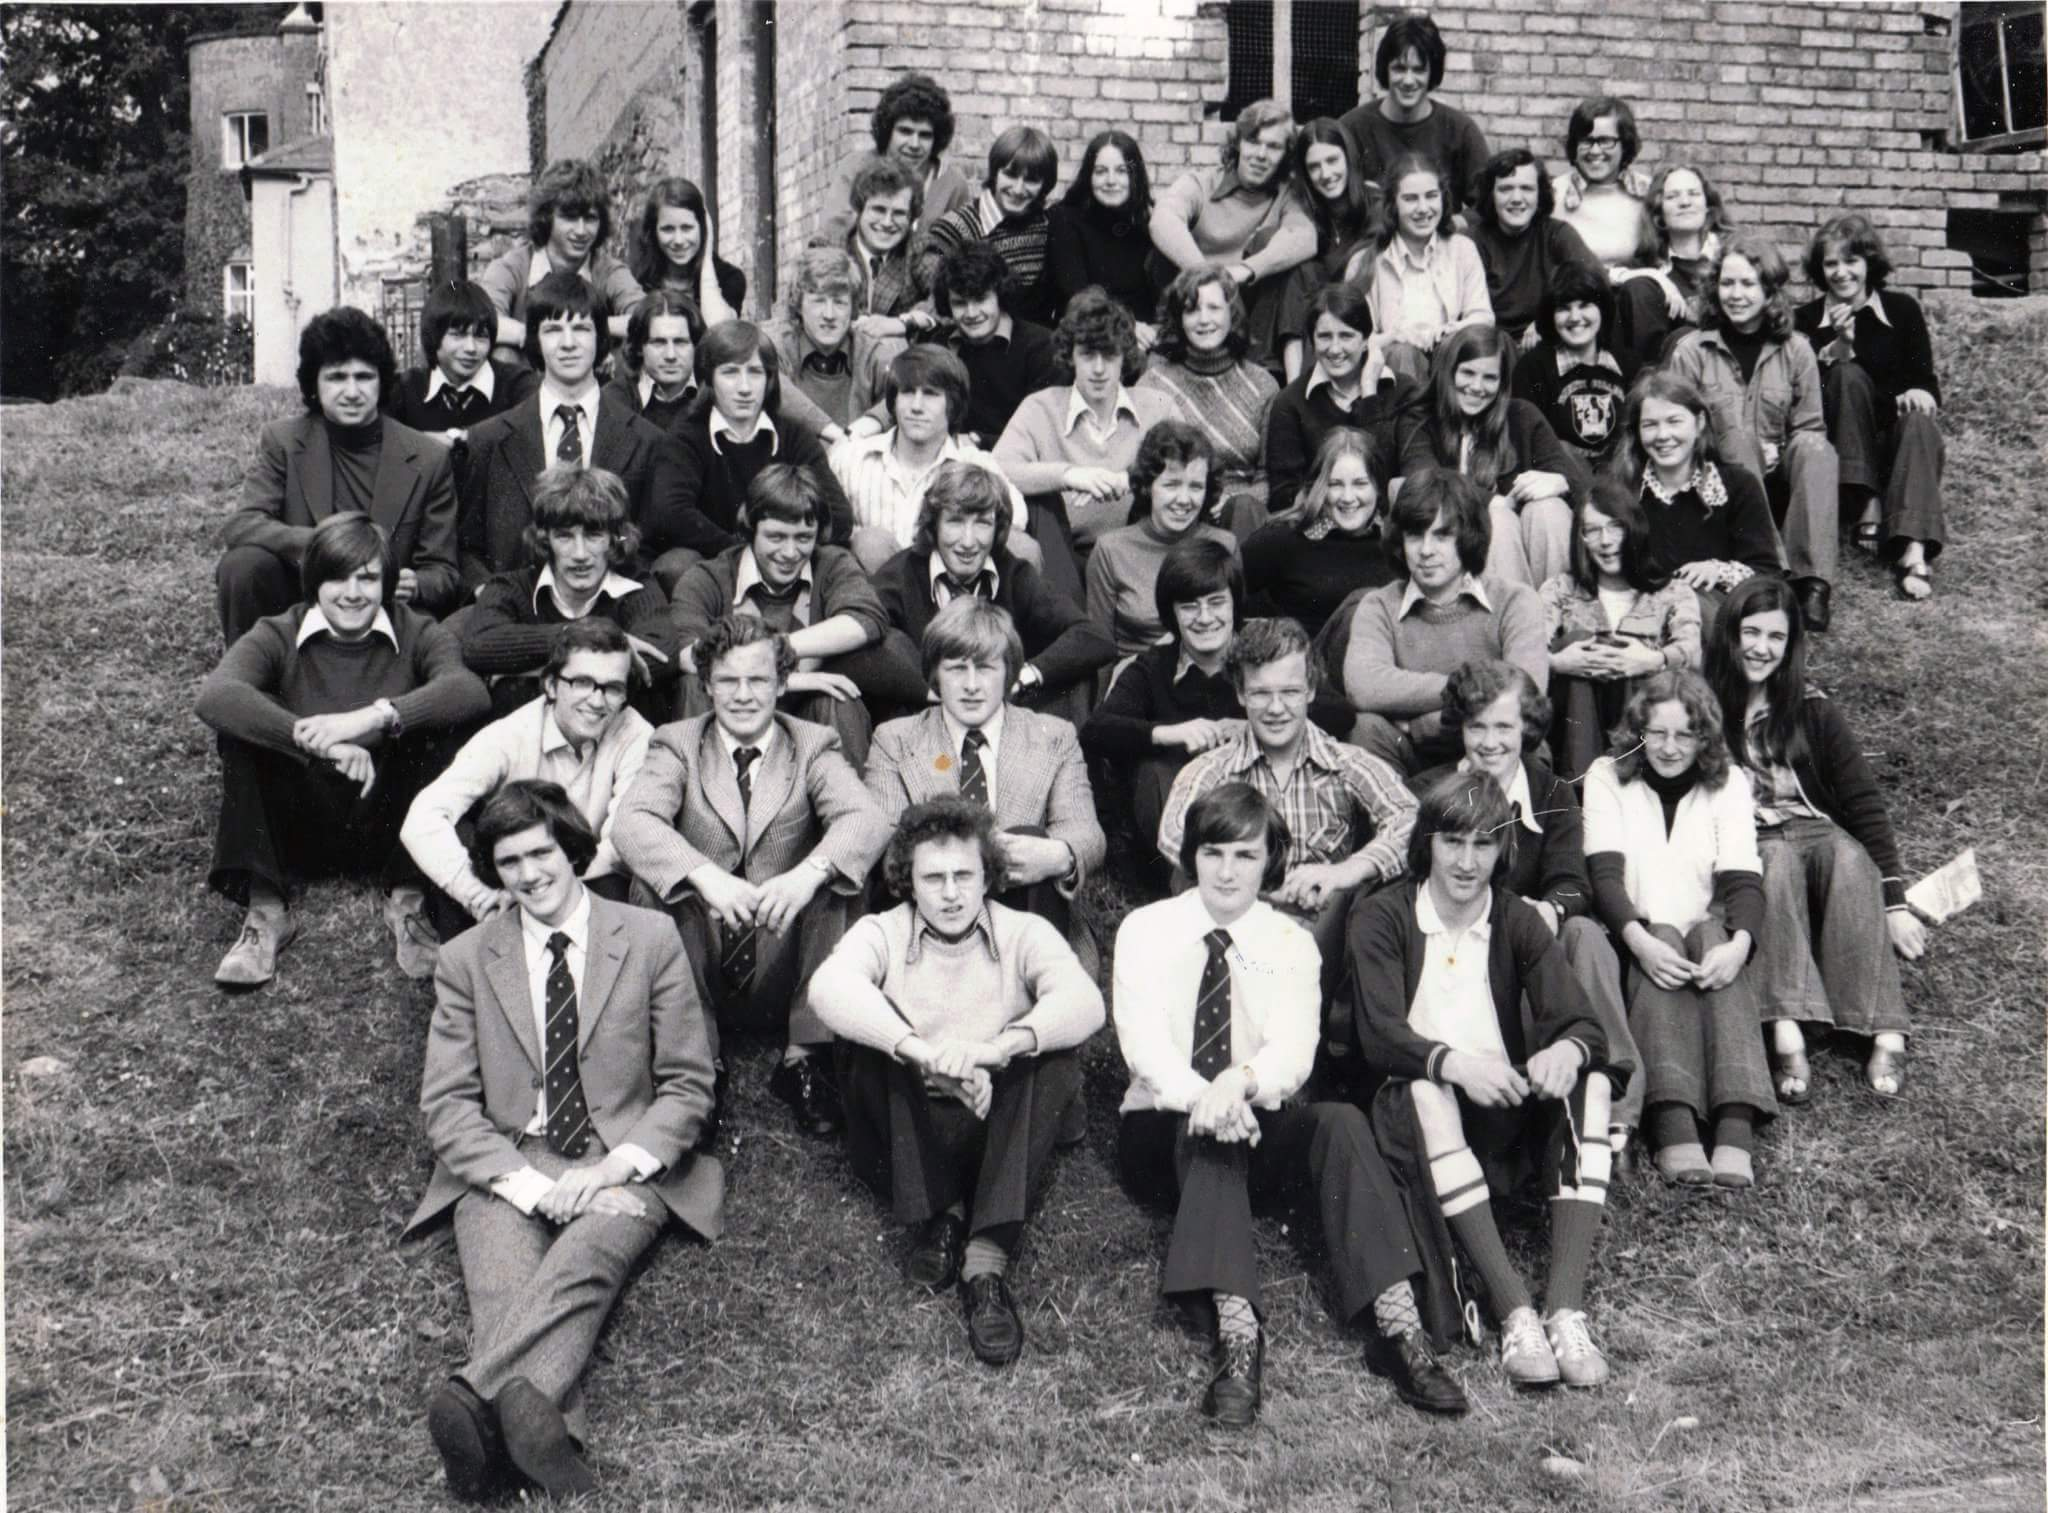 KH Class of 1976